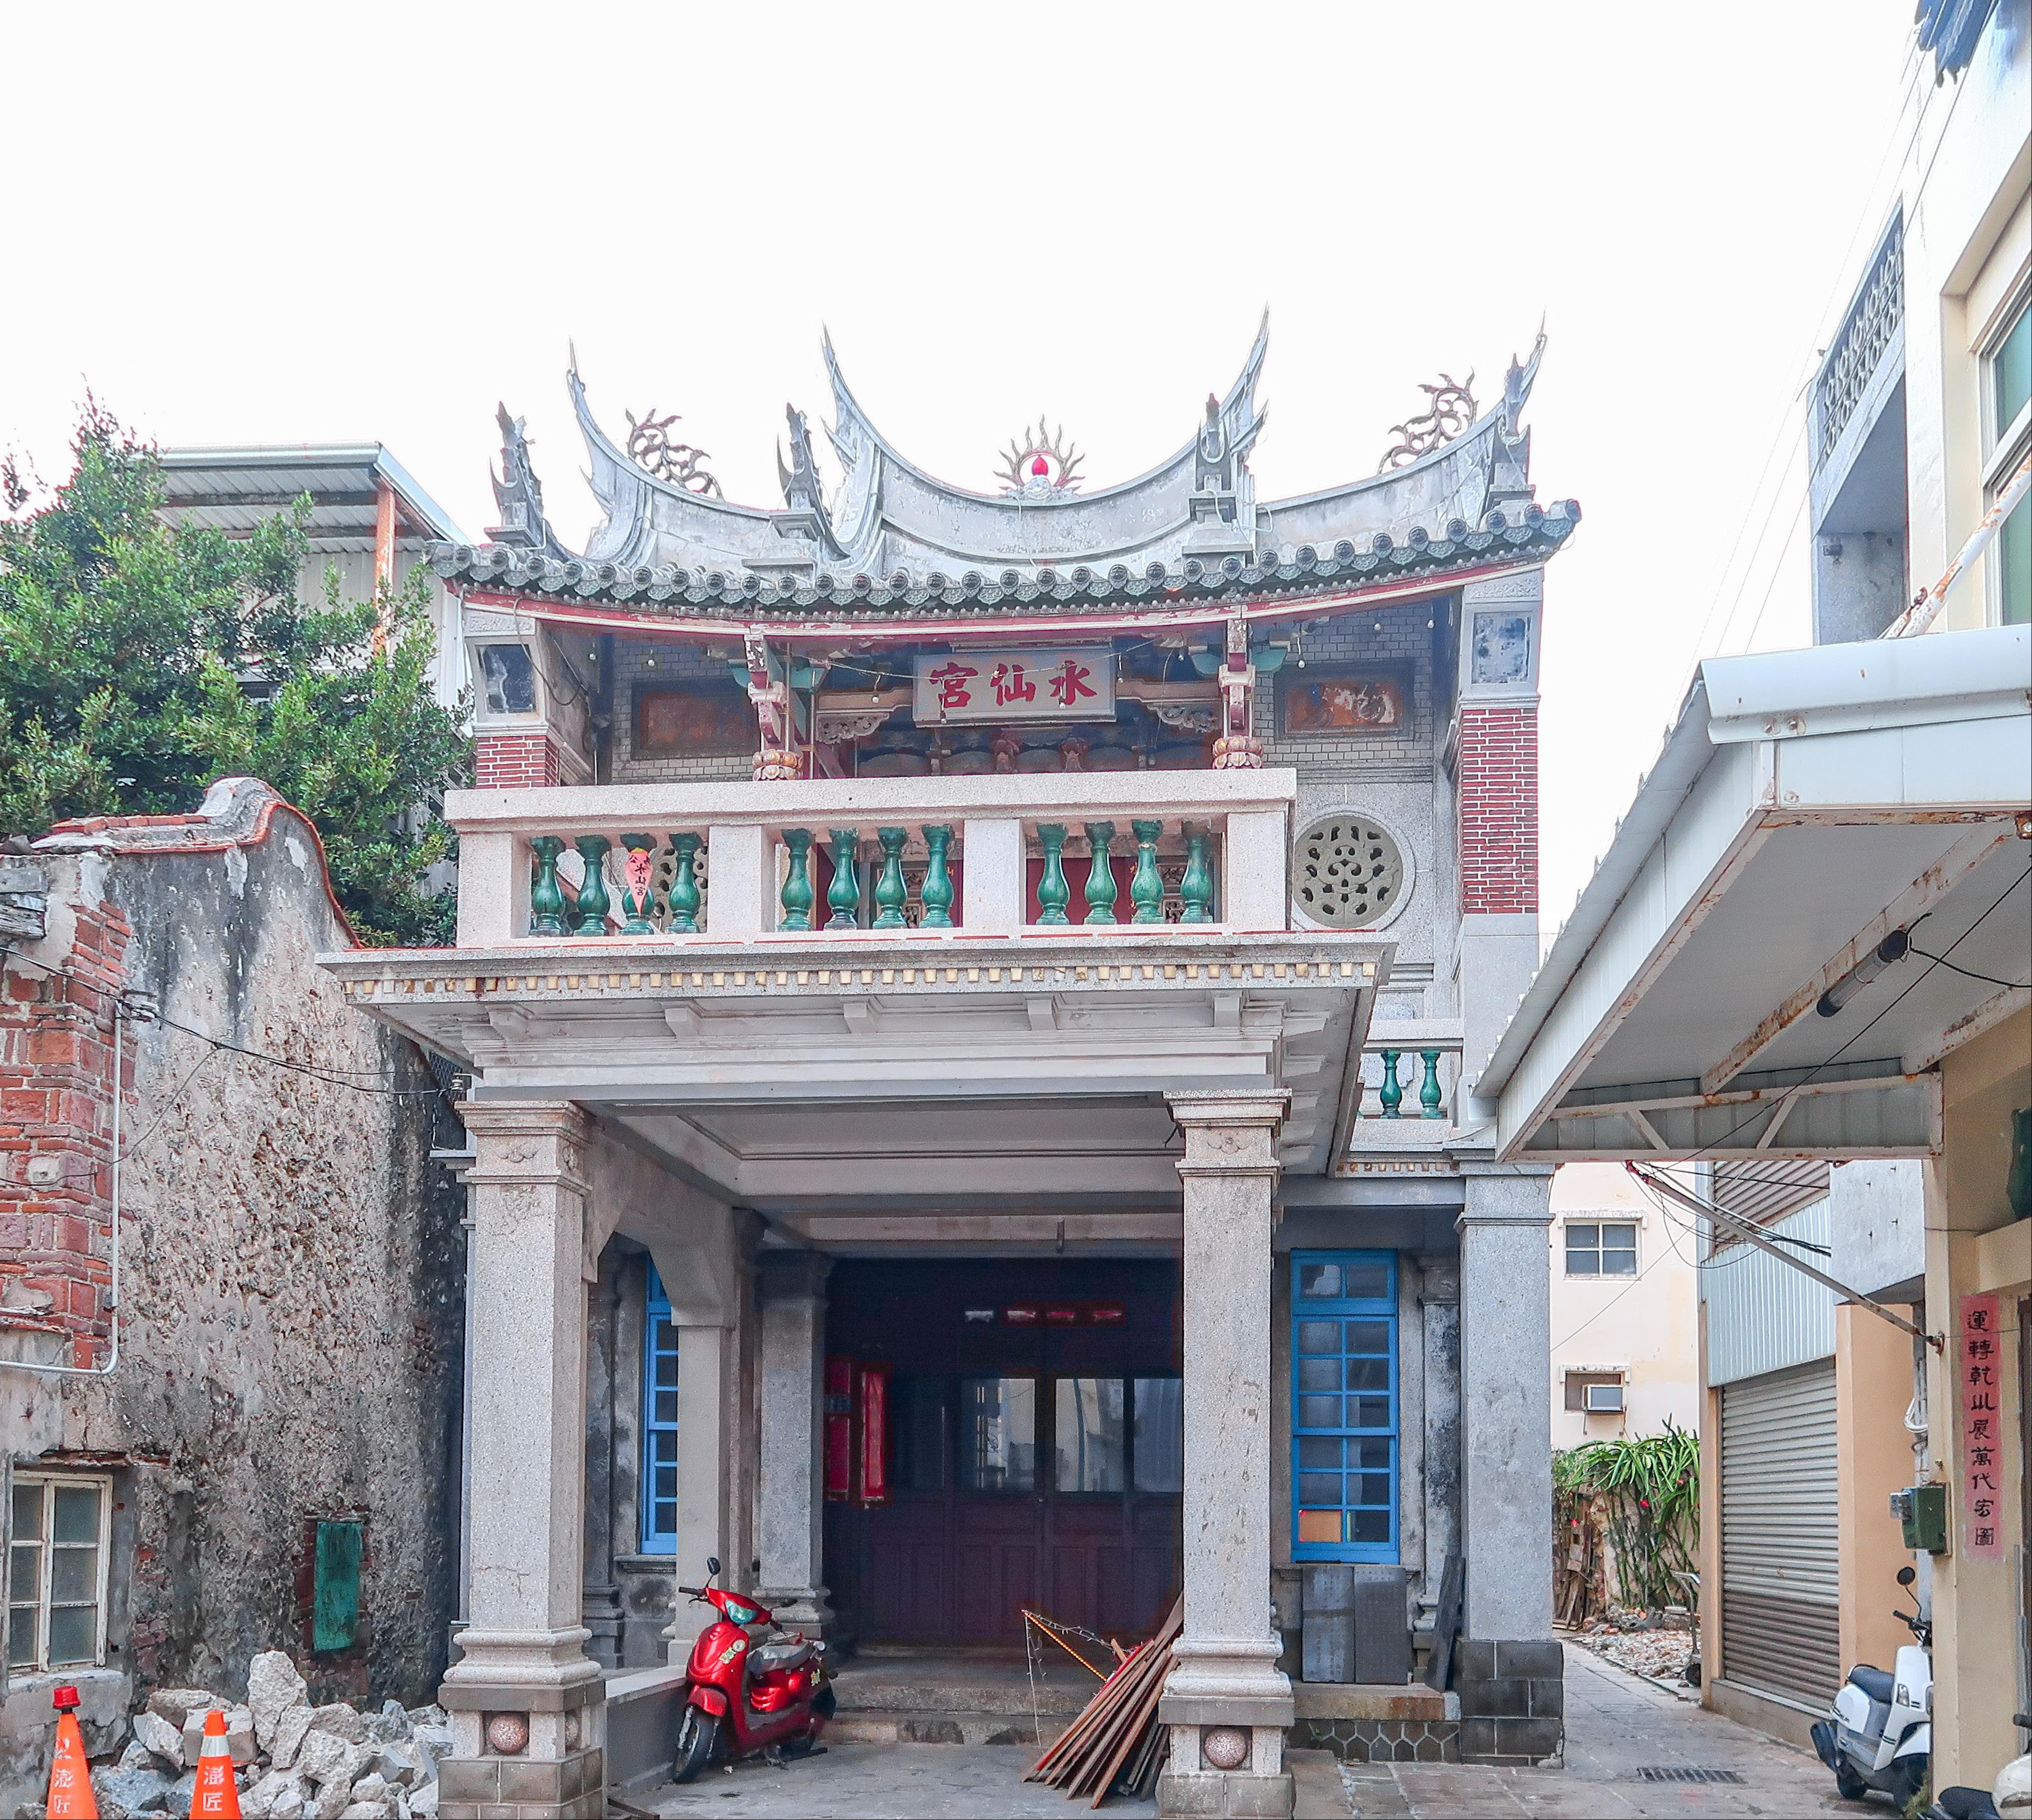 Penghu Shuixian Temple/ Taixia Guild Hall